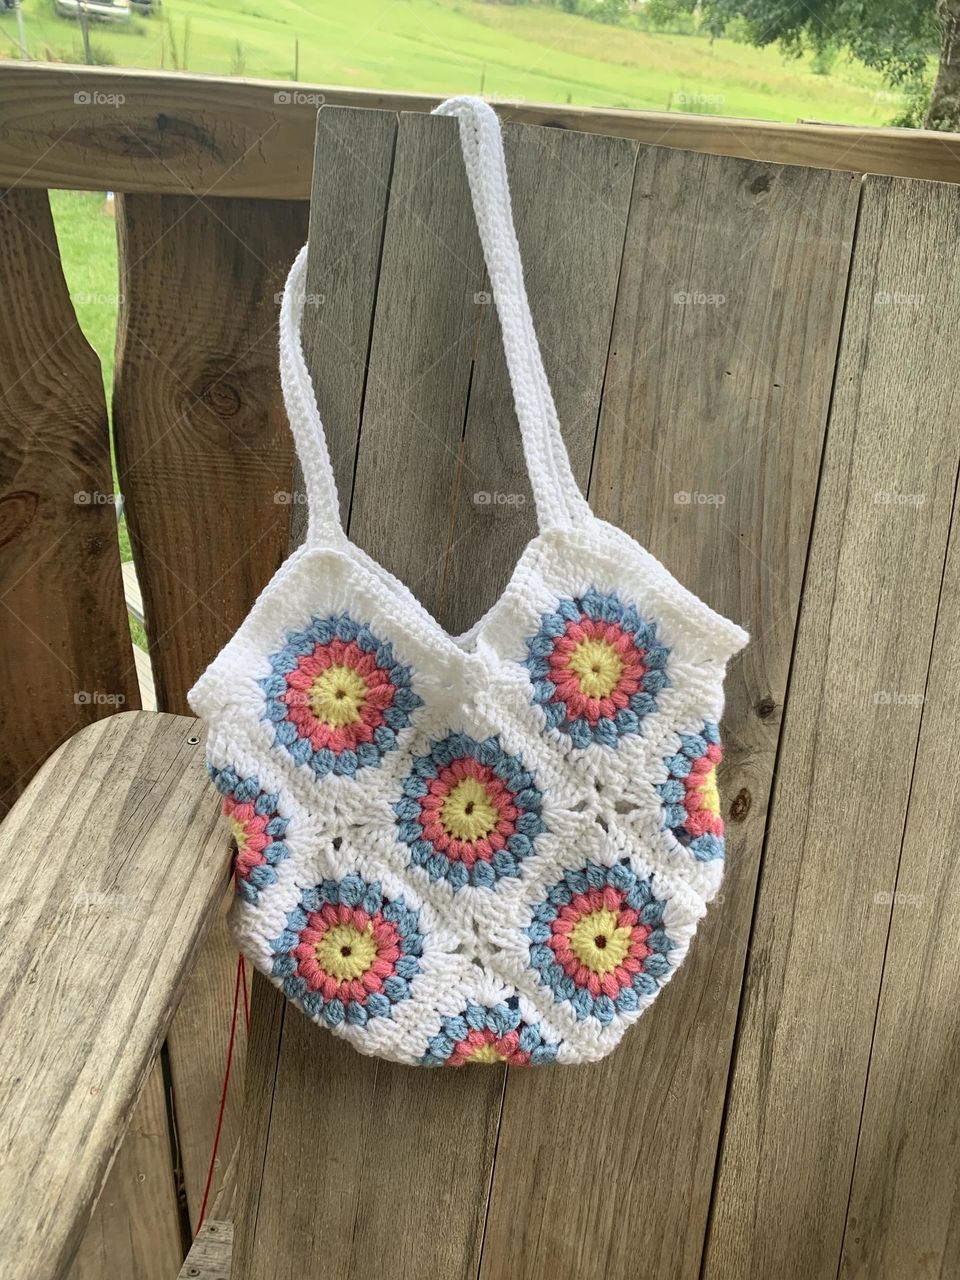 Crochet granny square purse